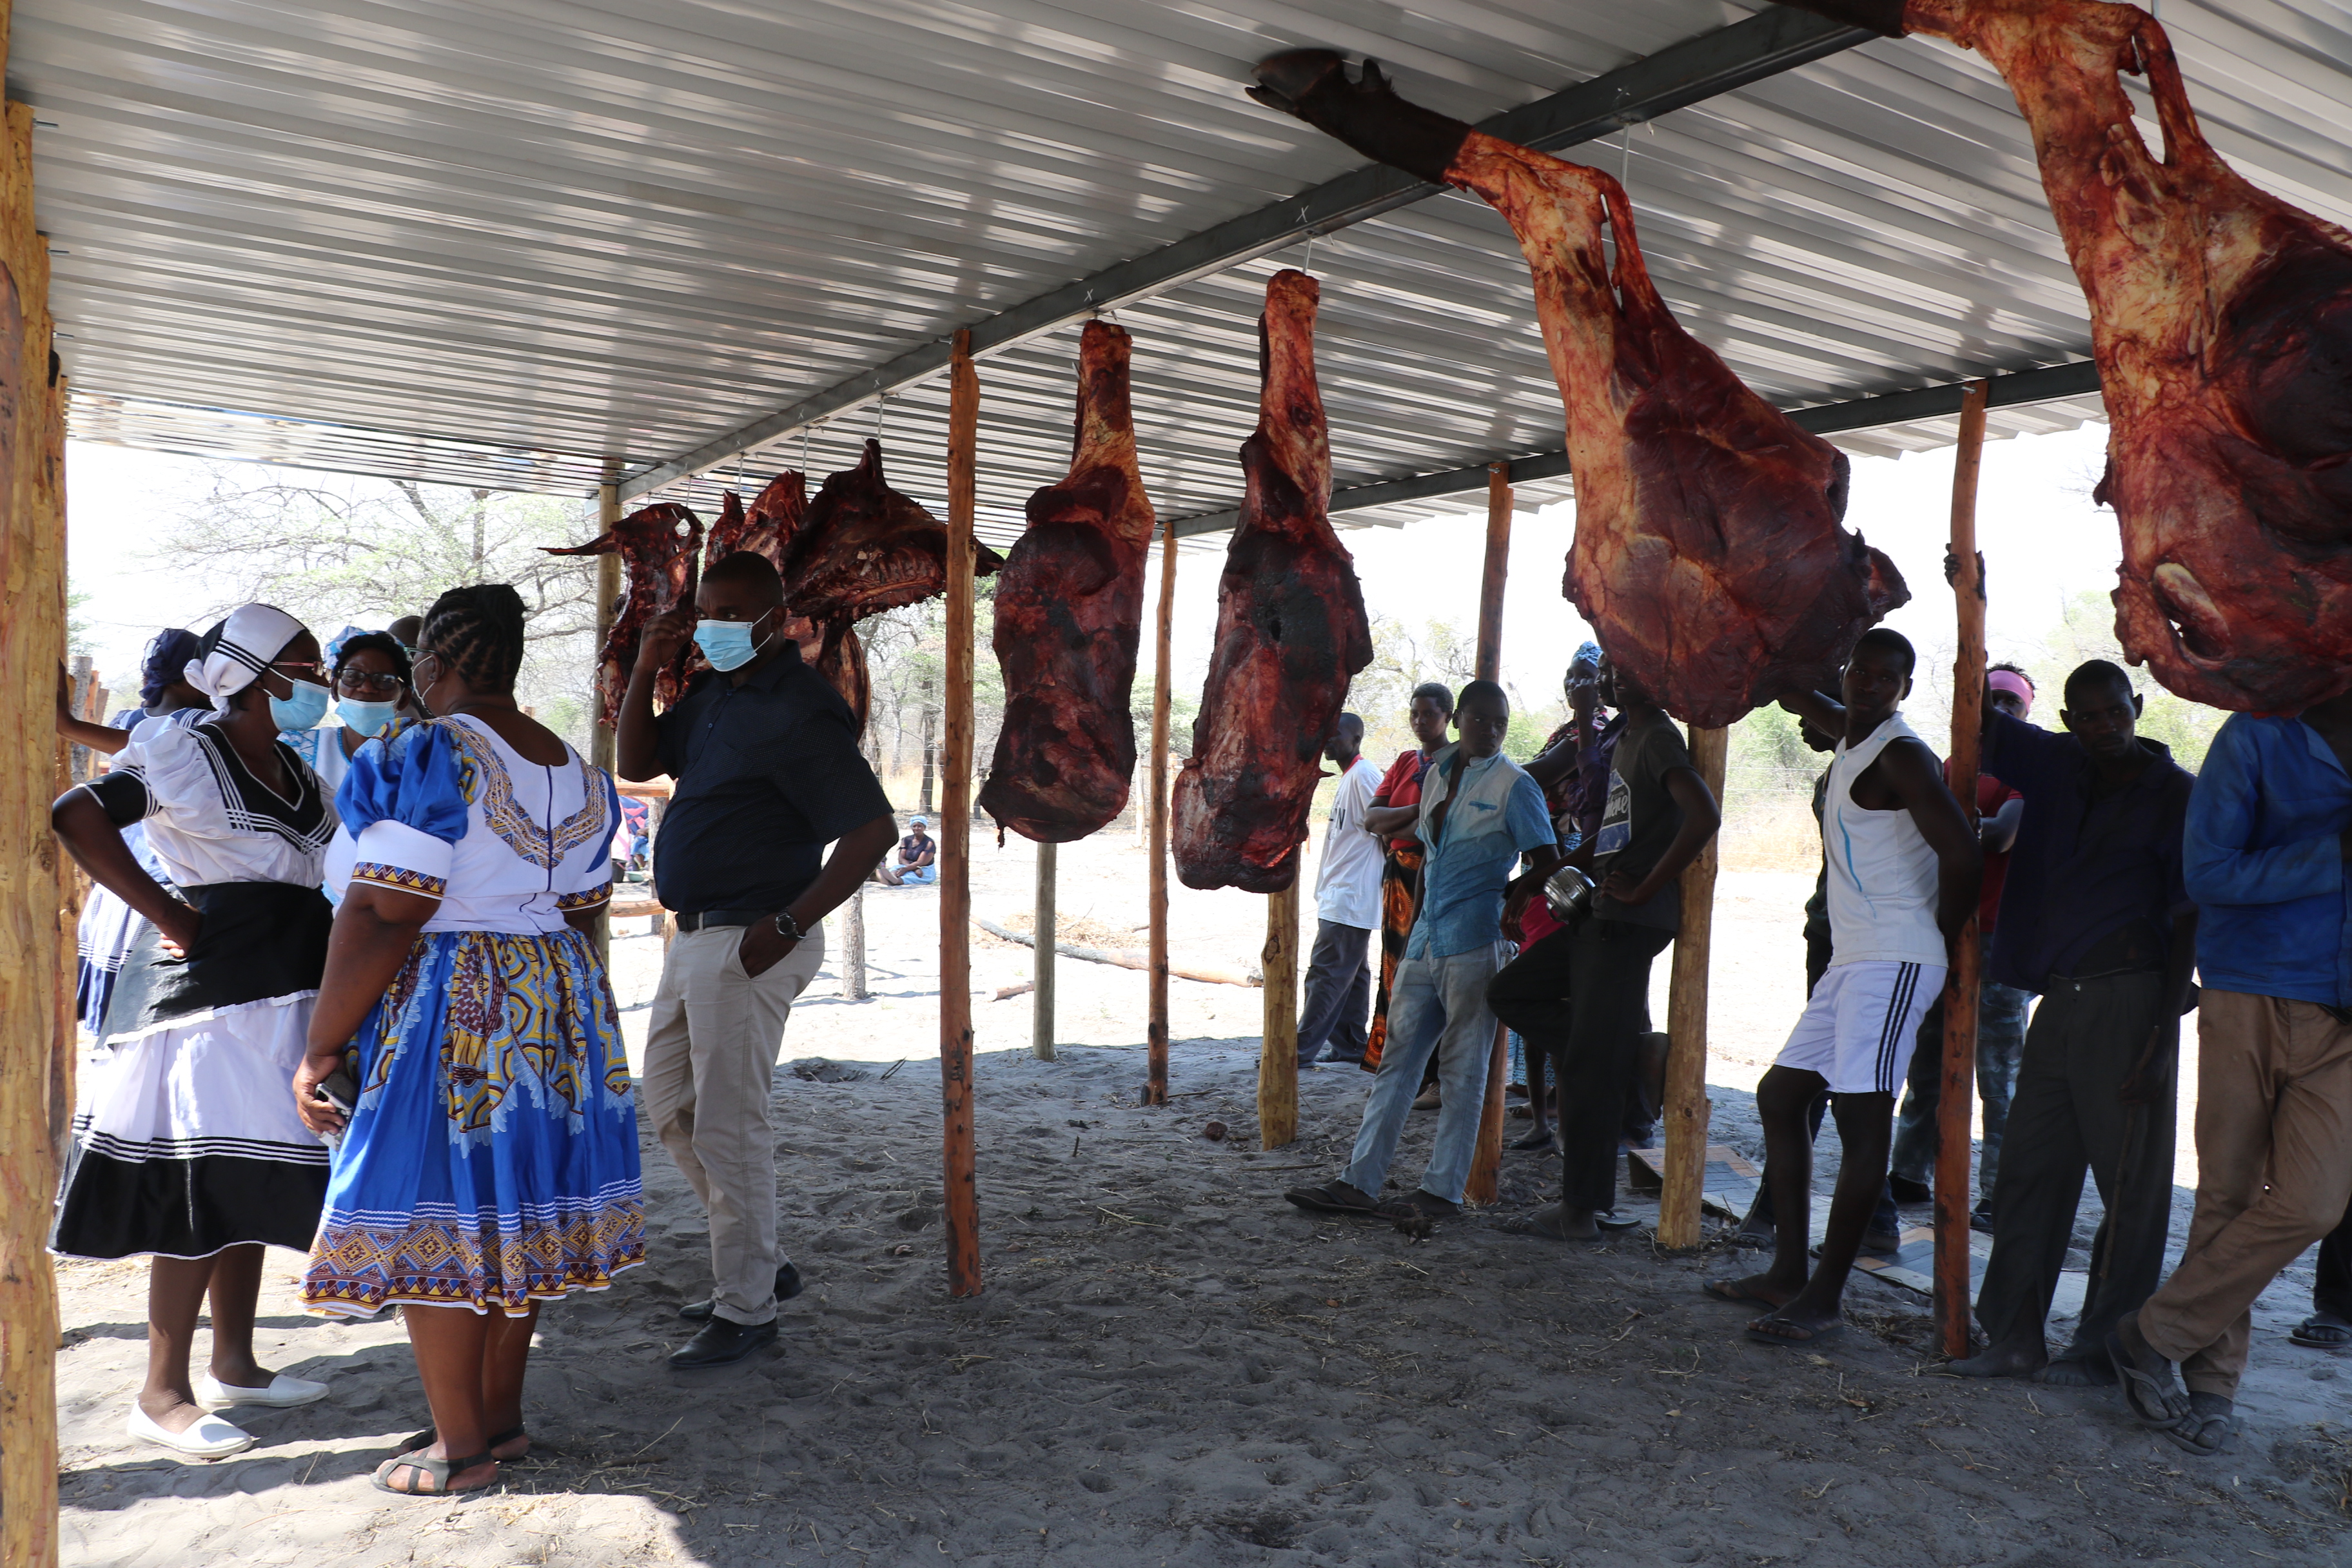 Nongozi open market inaugurated